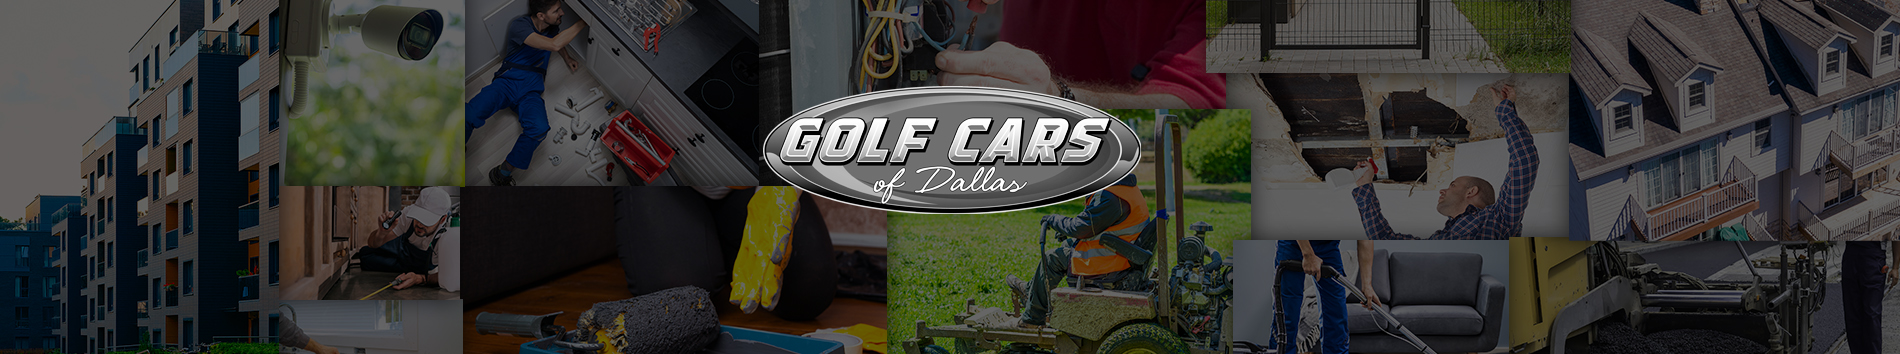 Golf Cars Of Dallas